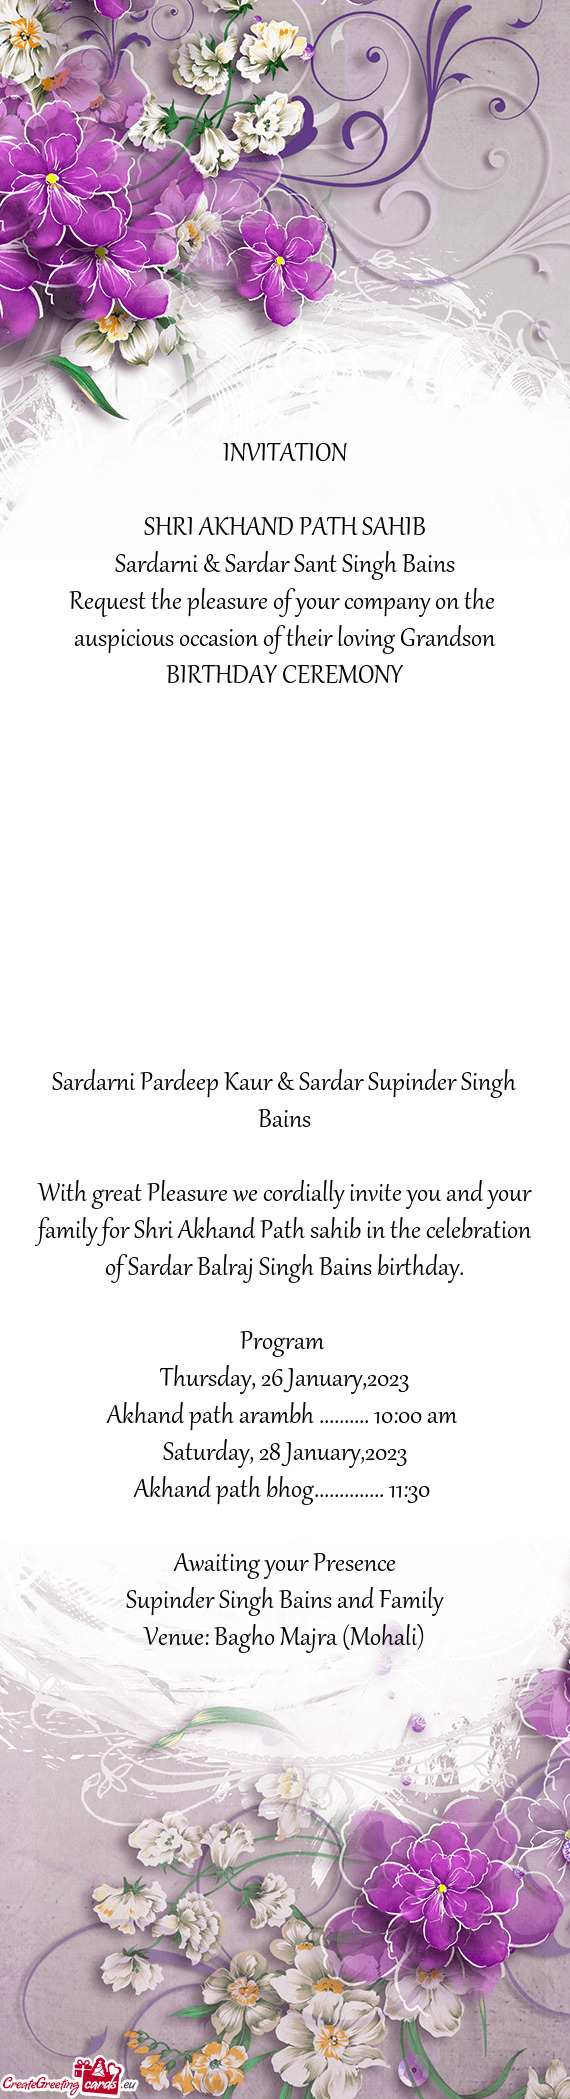 Sardarni & Sardar Sant Singh Bains